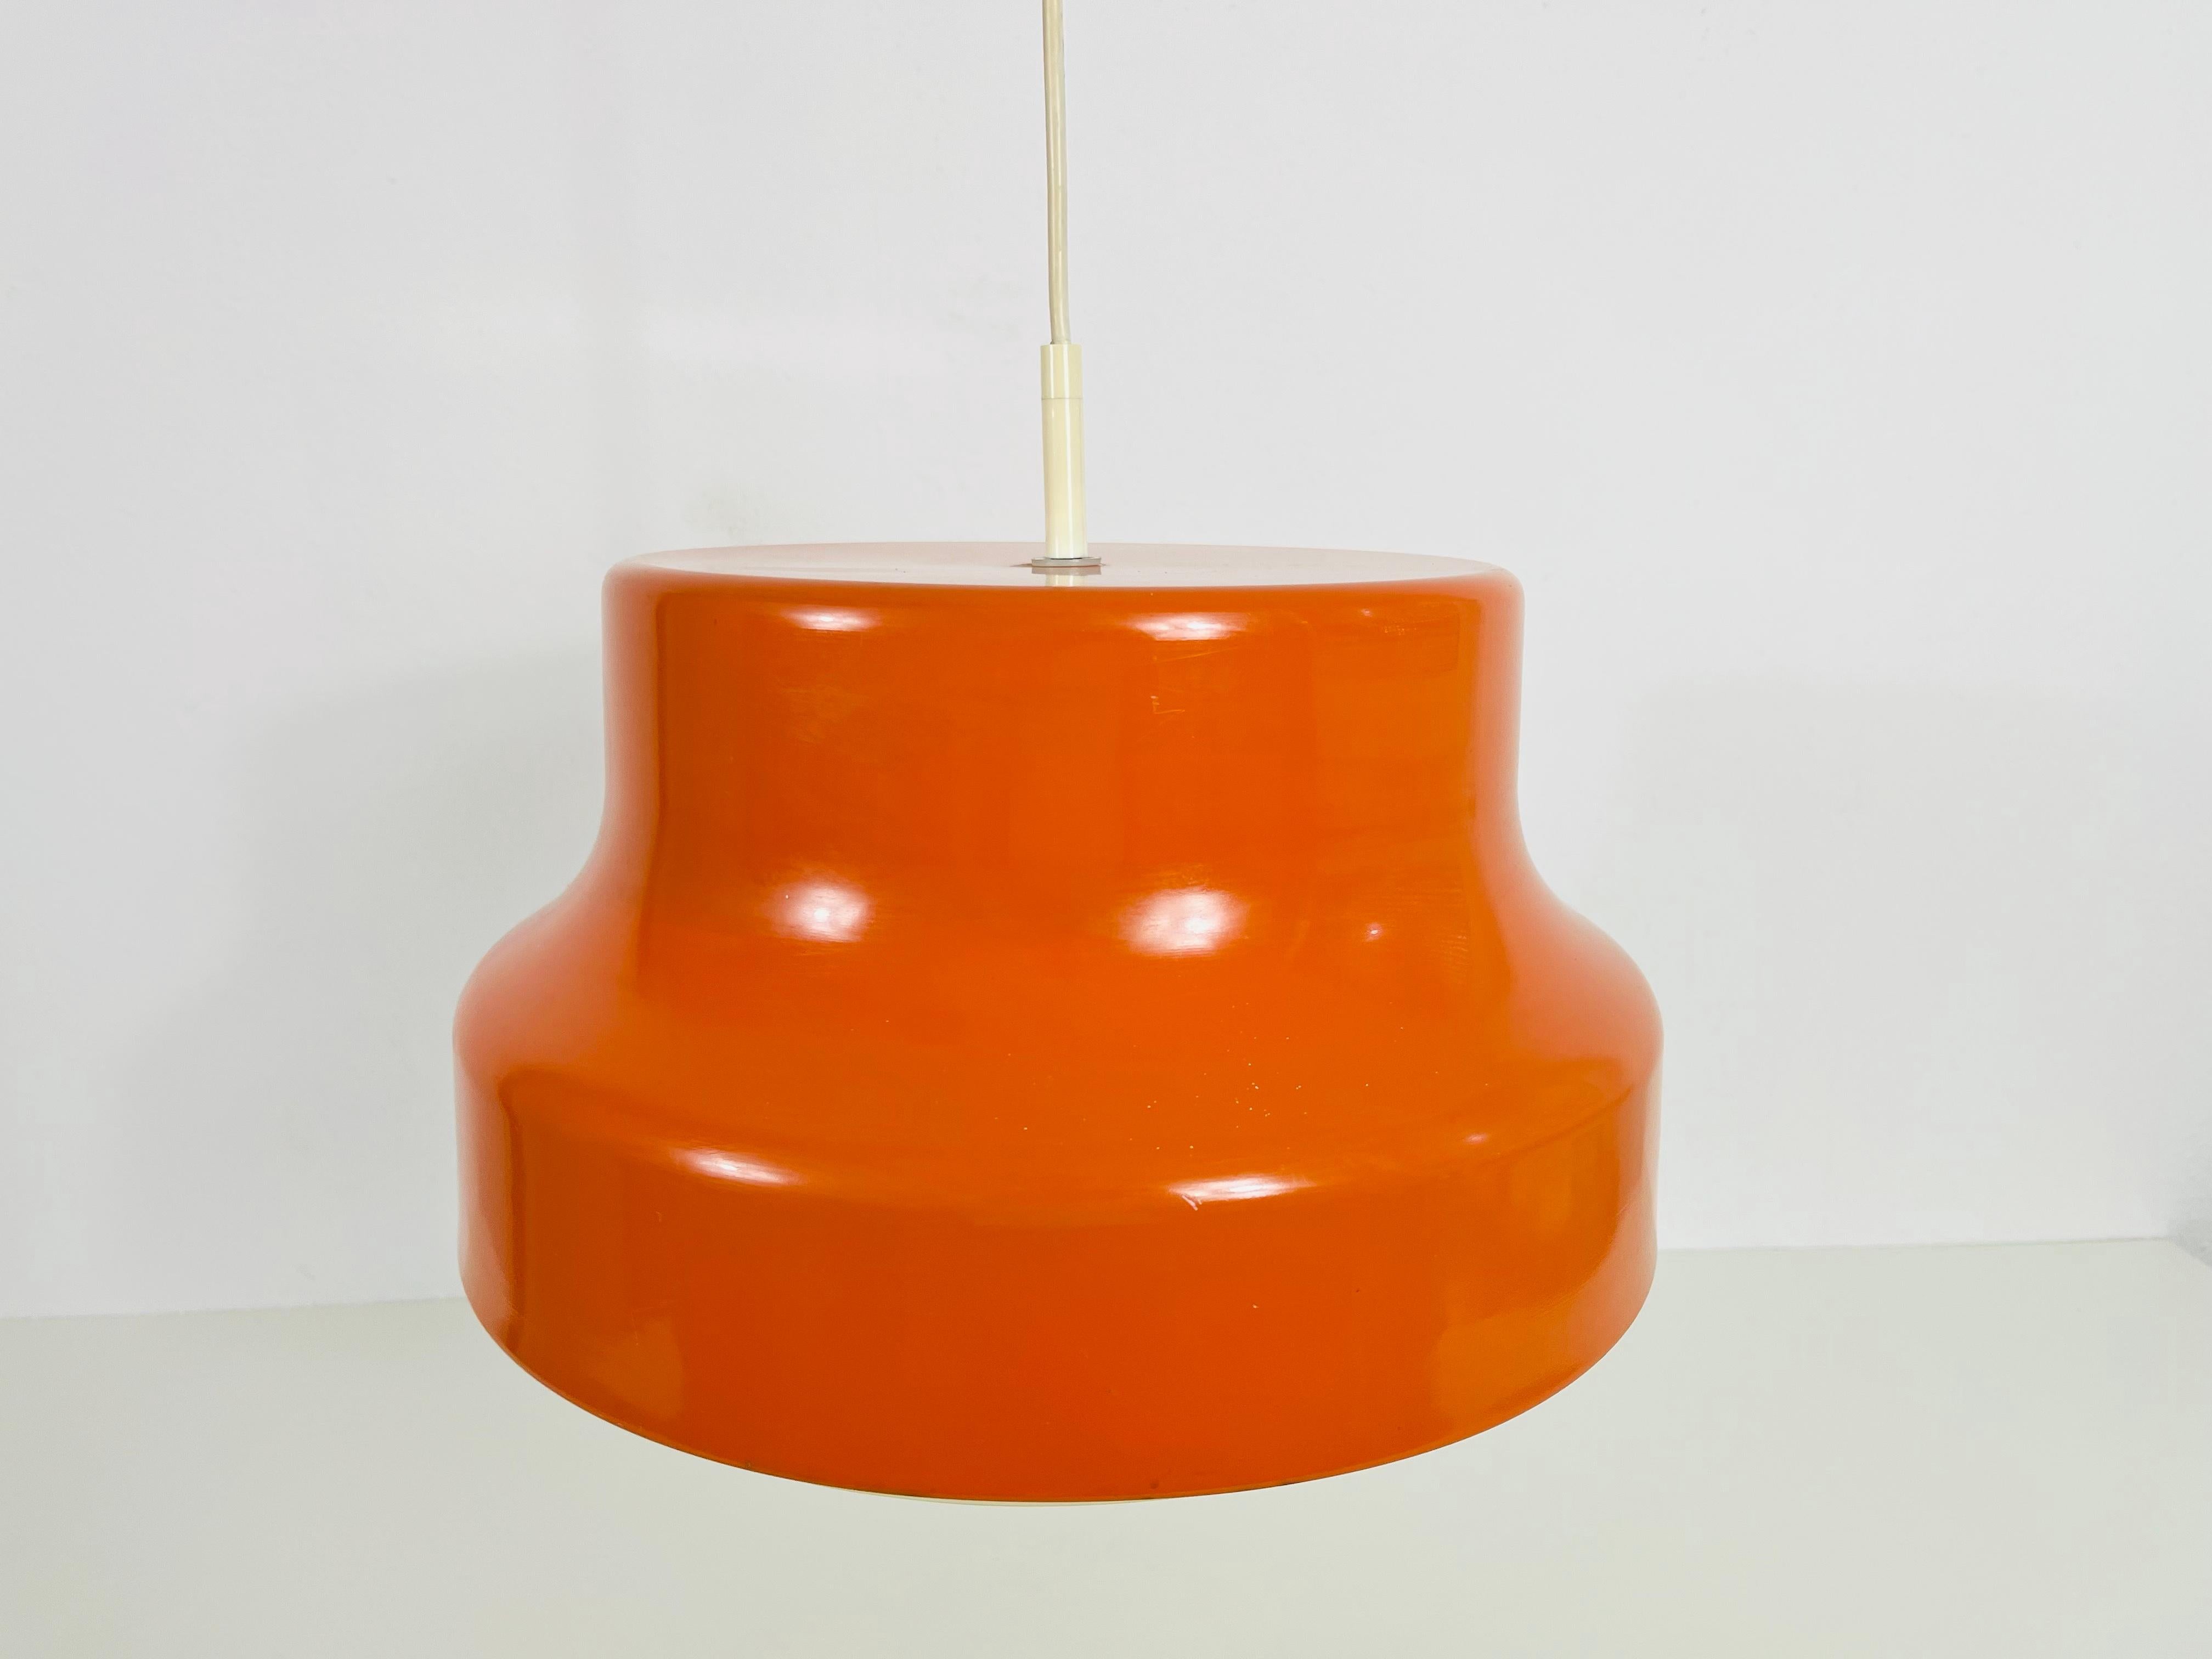 Lampe suspendue Bumling en plastique fabriquée dans les années 1970.

Mesures : 

Hauteur de l'abat-jour : 21 cm
Hauteur maximale : 90 cm
Diamètre : 36 cm

La lampe nécessite une ampoule E27. Fonctionne avec 120V/220V. Bon état